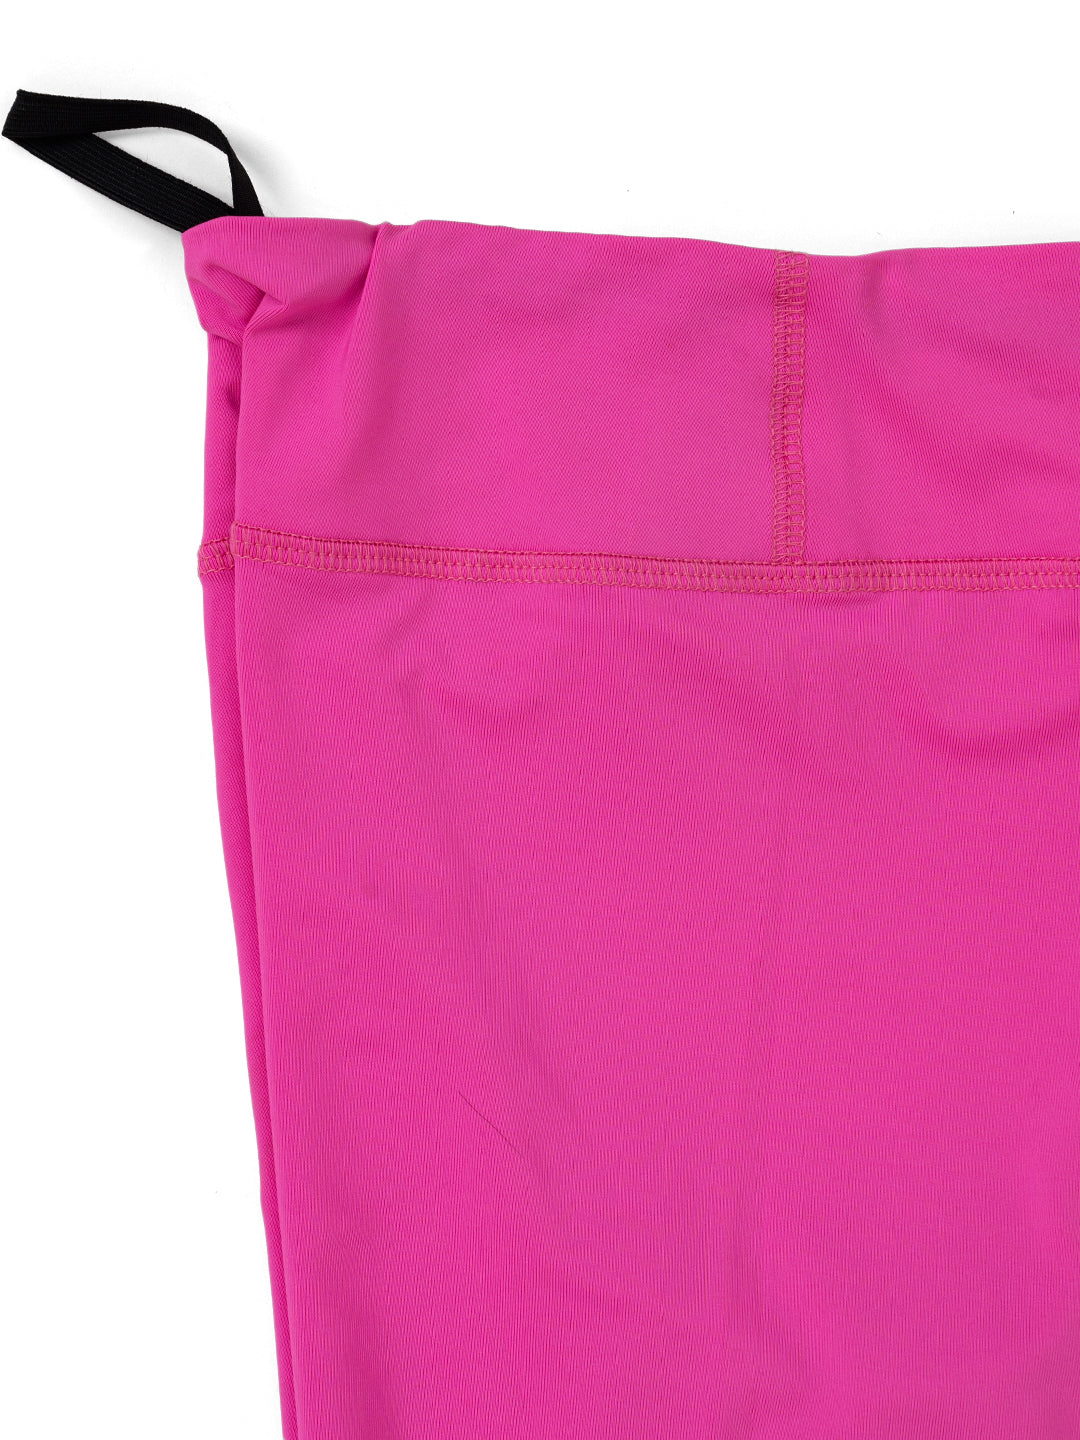 Neon Pink power fashion leggings - Kids